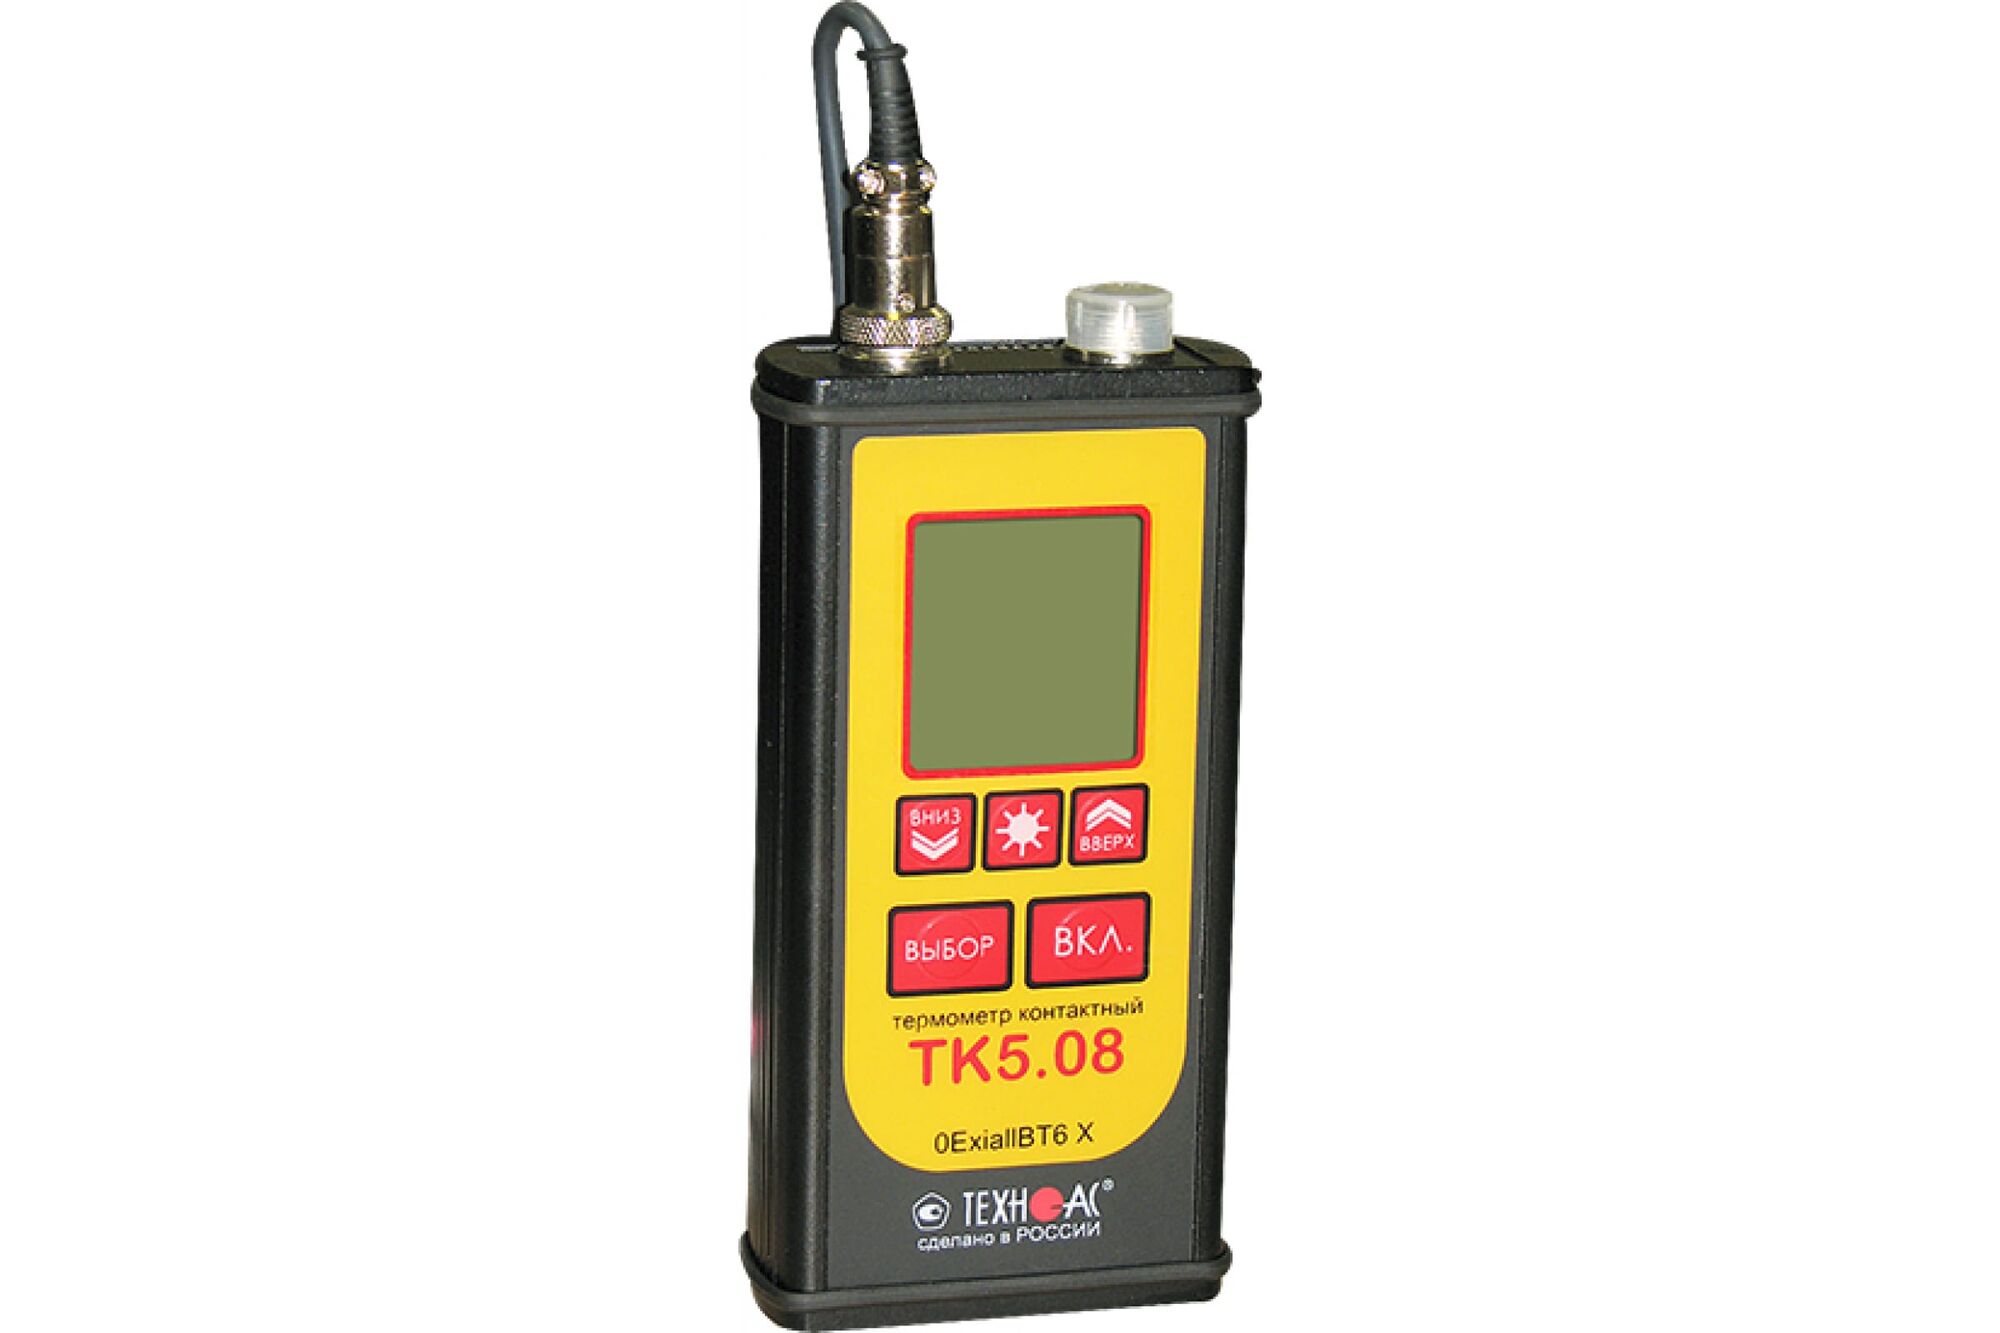 Взрывозащищённый контактный термометр ООО Техно-Ас ТК 5.08 00-00016760